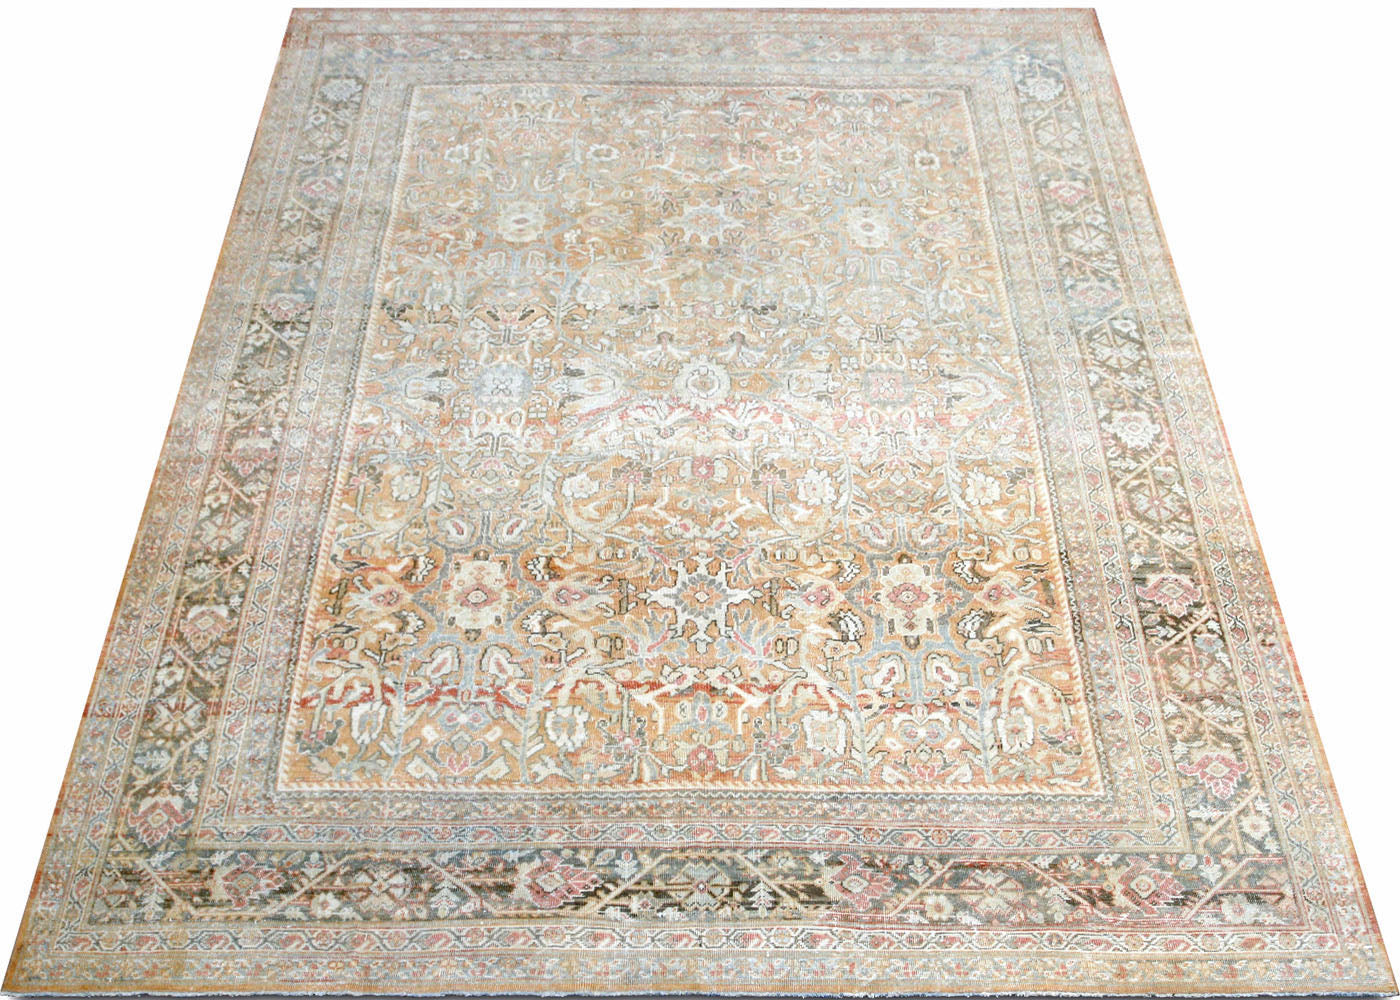 Antique Persian Mahal Rug - 10'4" x 13'7"